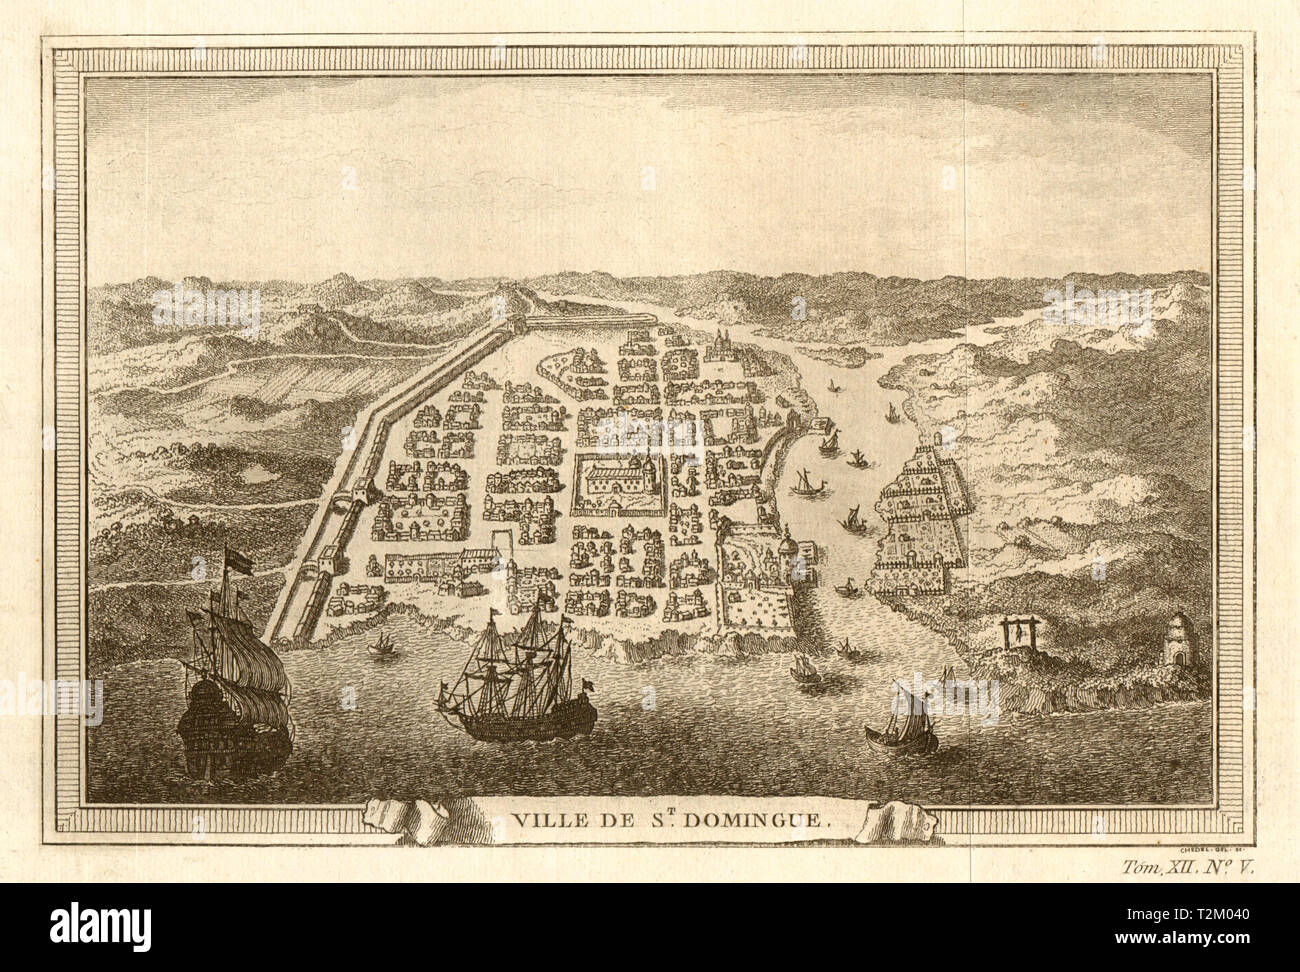 'St. Domingue'. Vue à vol d'oiseau. Ville de Santo Domingo, la République dominicaine 1754 Banque D'Images